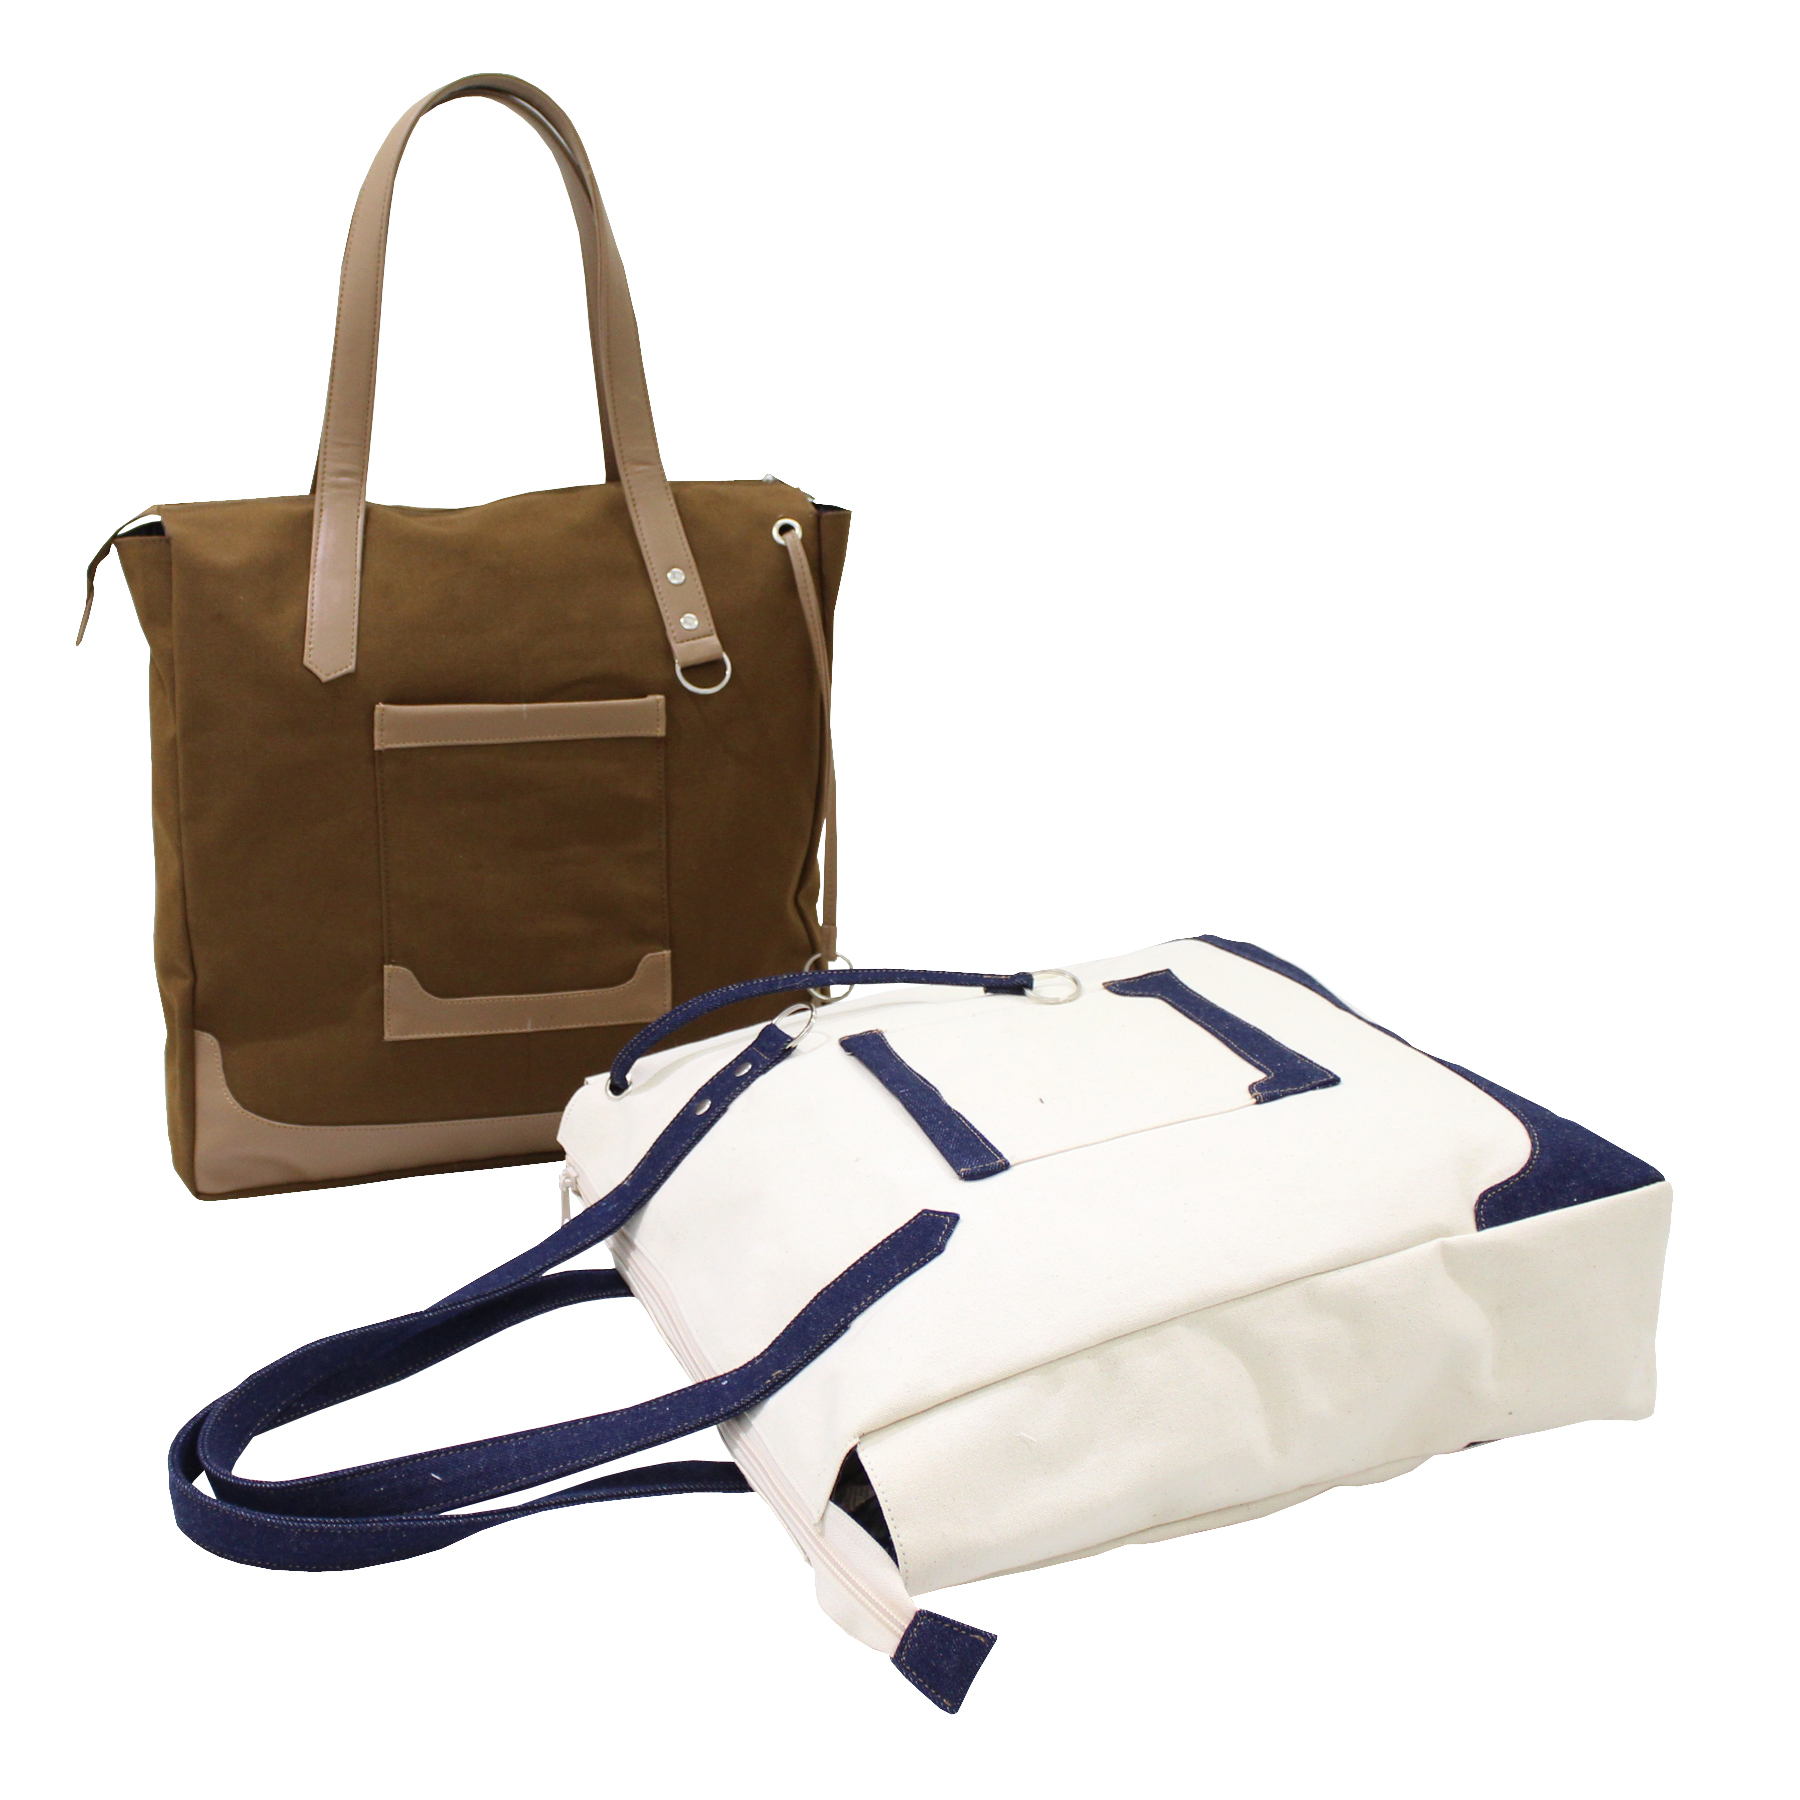 Designer Tote Bag With Zip Pocket